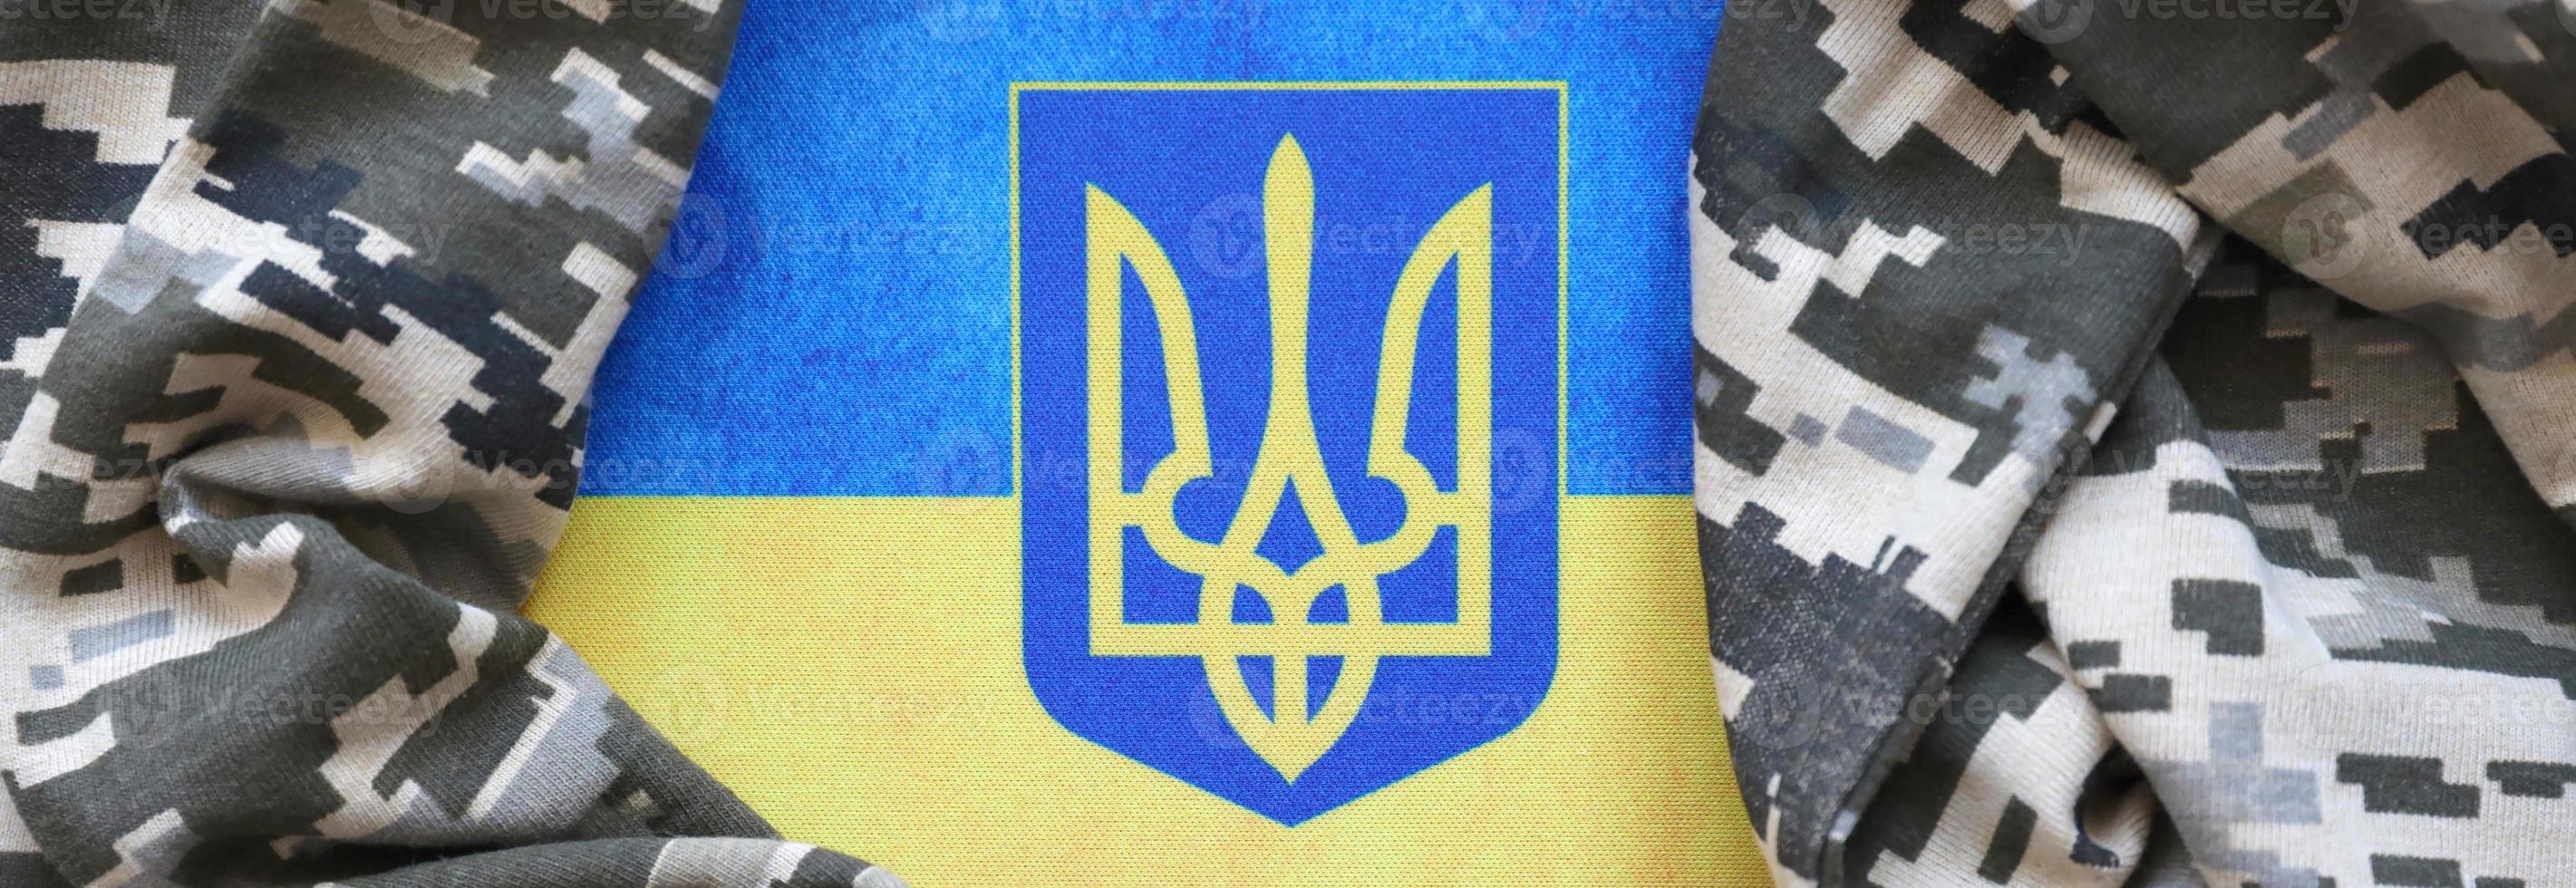 bandeira ucraniana e brasão com tecido com textura de camuflagem pixelizada. pano com padrão de camuflagem em formas de pixel cinza, marrom e verde com sinal de tridente ucraniano foto